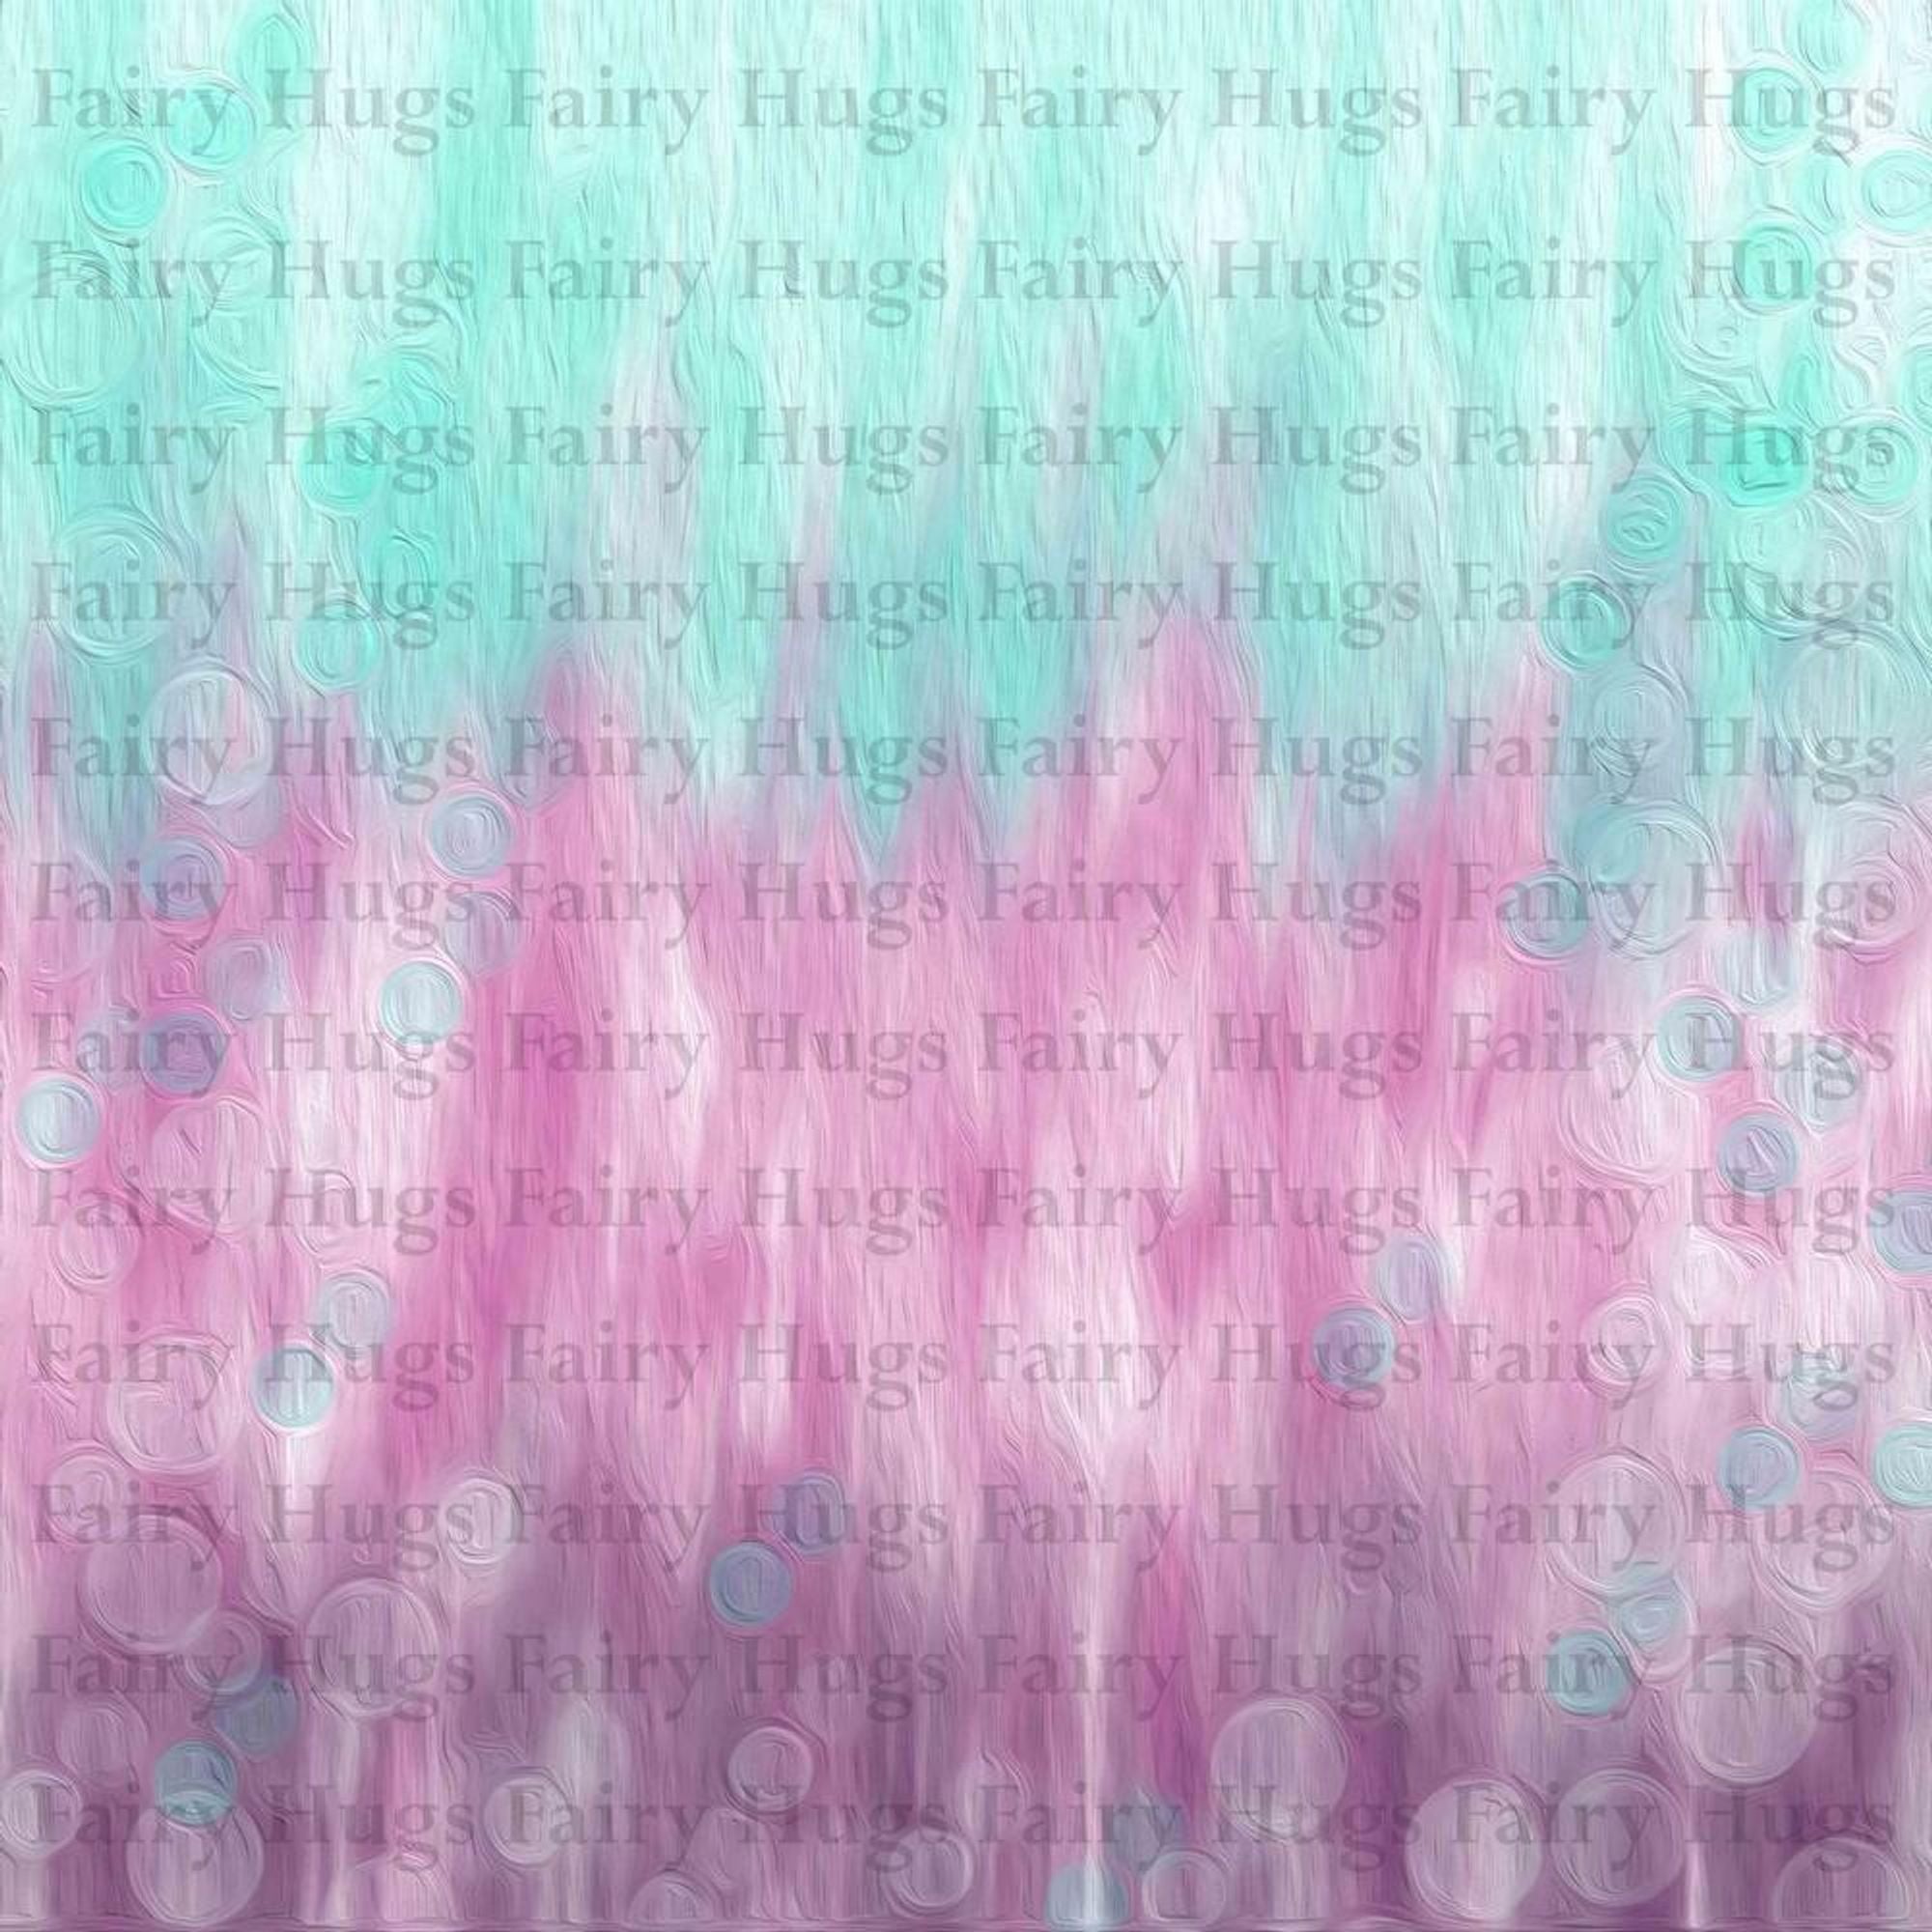 Fairy Hugs - Fairy-Scapes - 6" x 6" - Sea Fair